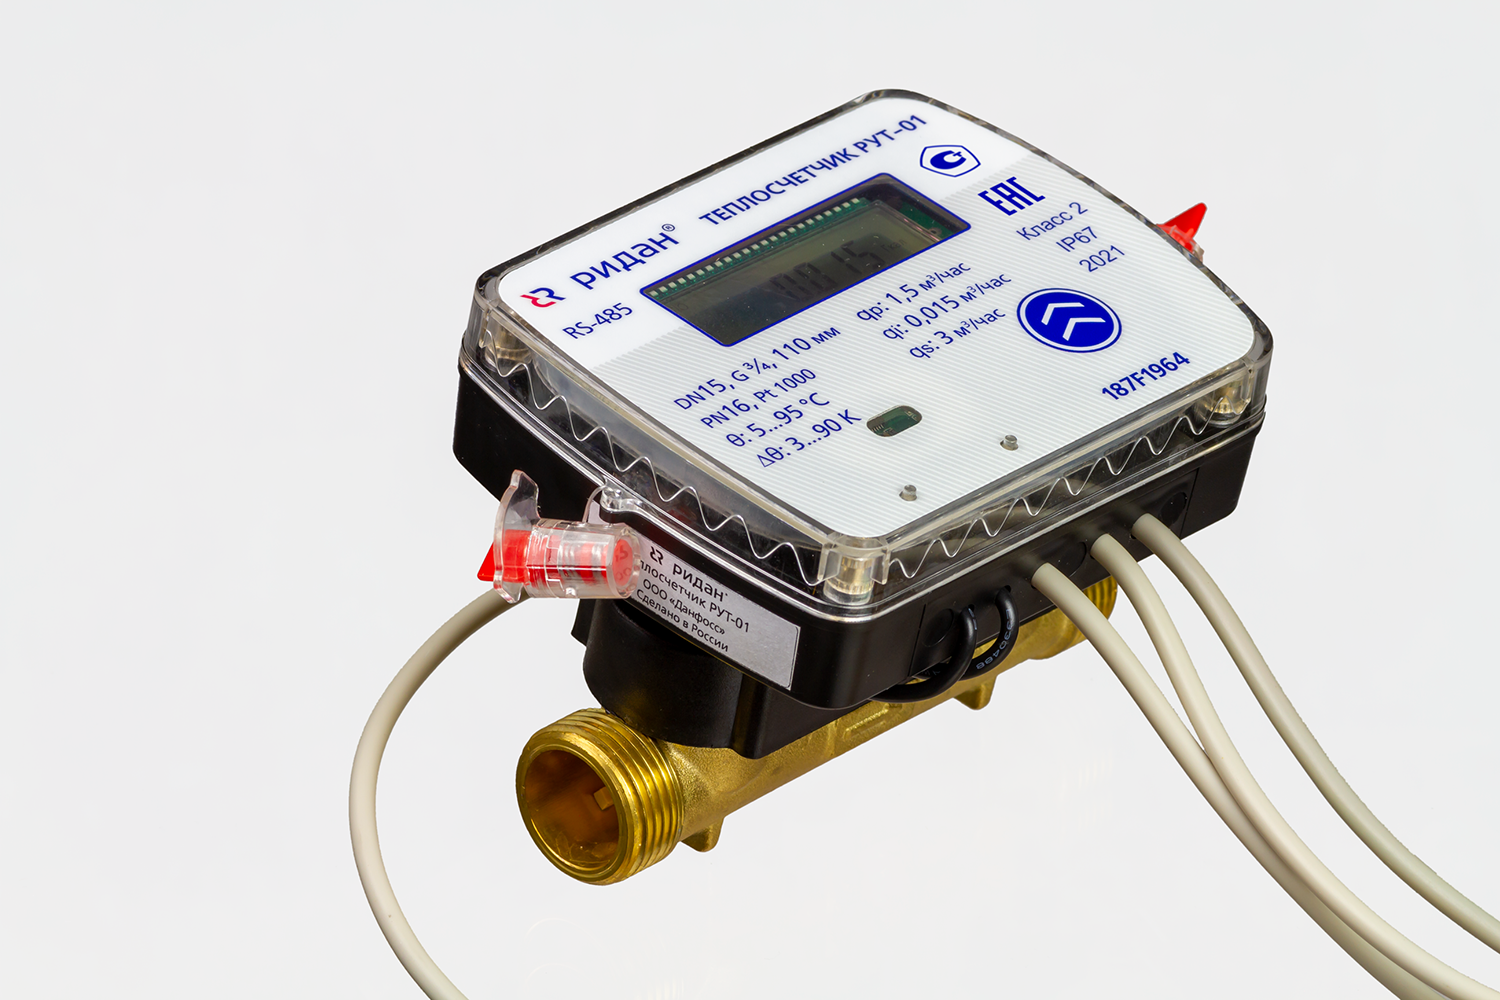 Теплосчетчик ультразвуковой РУТ-01 для учета в системах водяного отопления Ридан 187F1949PR